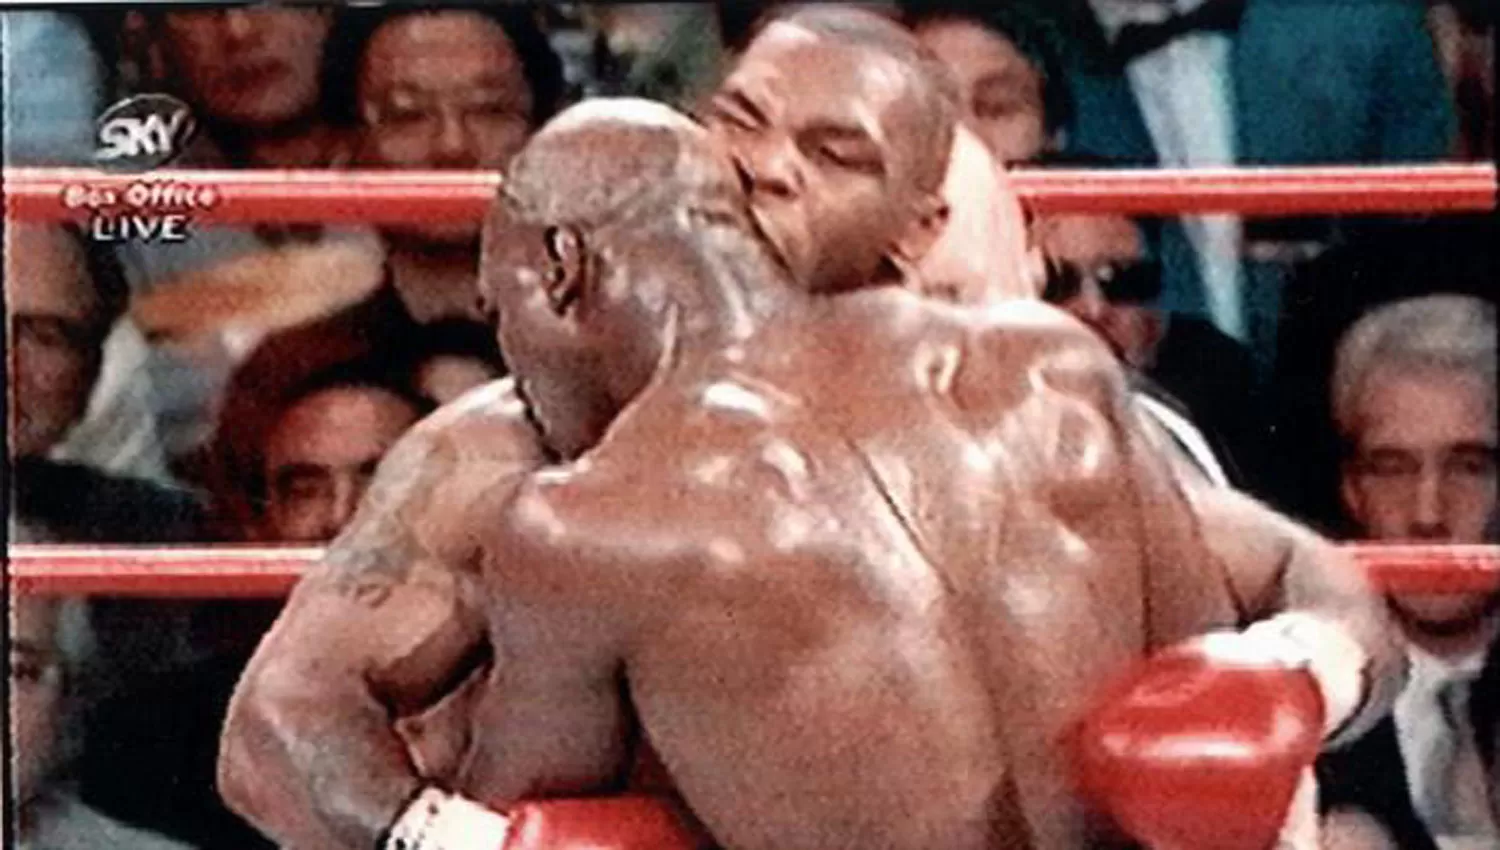 MEMORABLE. La noche del 28 de junio de 1997, Tyson le mordió la oreja derecha a Holyfield y fue descalificado.